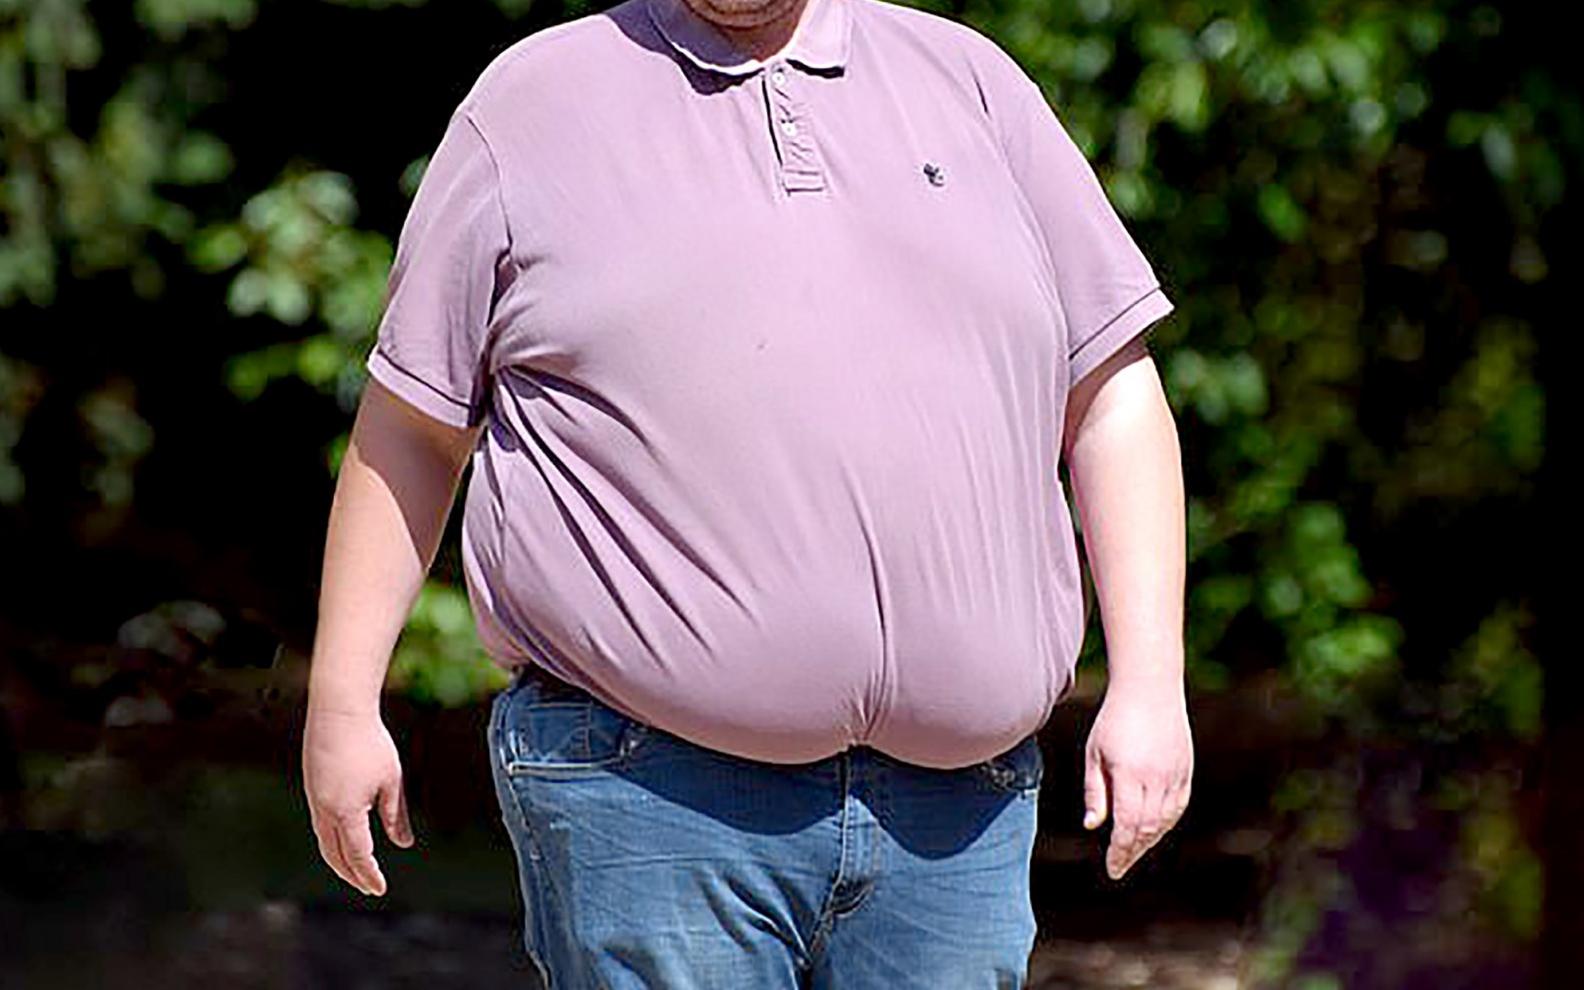   Những người béo phì cũng dễ bị mắc bệnh cúm A lâu hơn những so với những người có thân hình cân đối (Ảnh minh họa)  